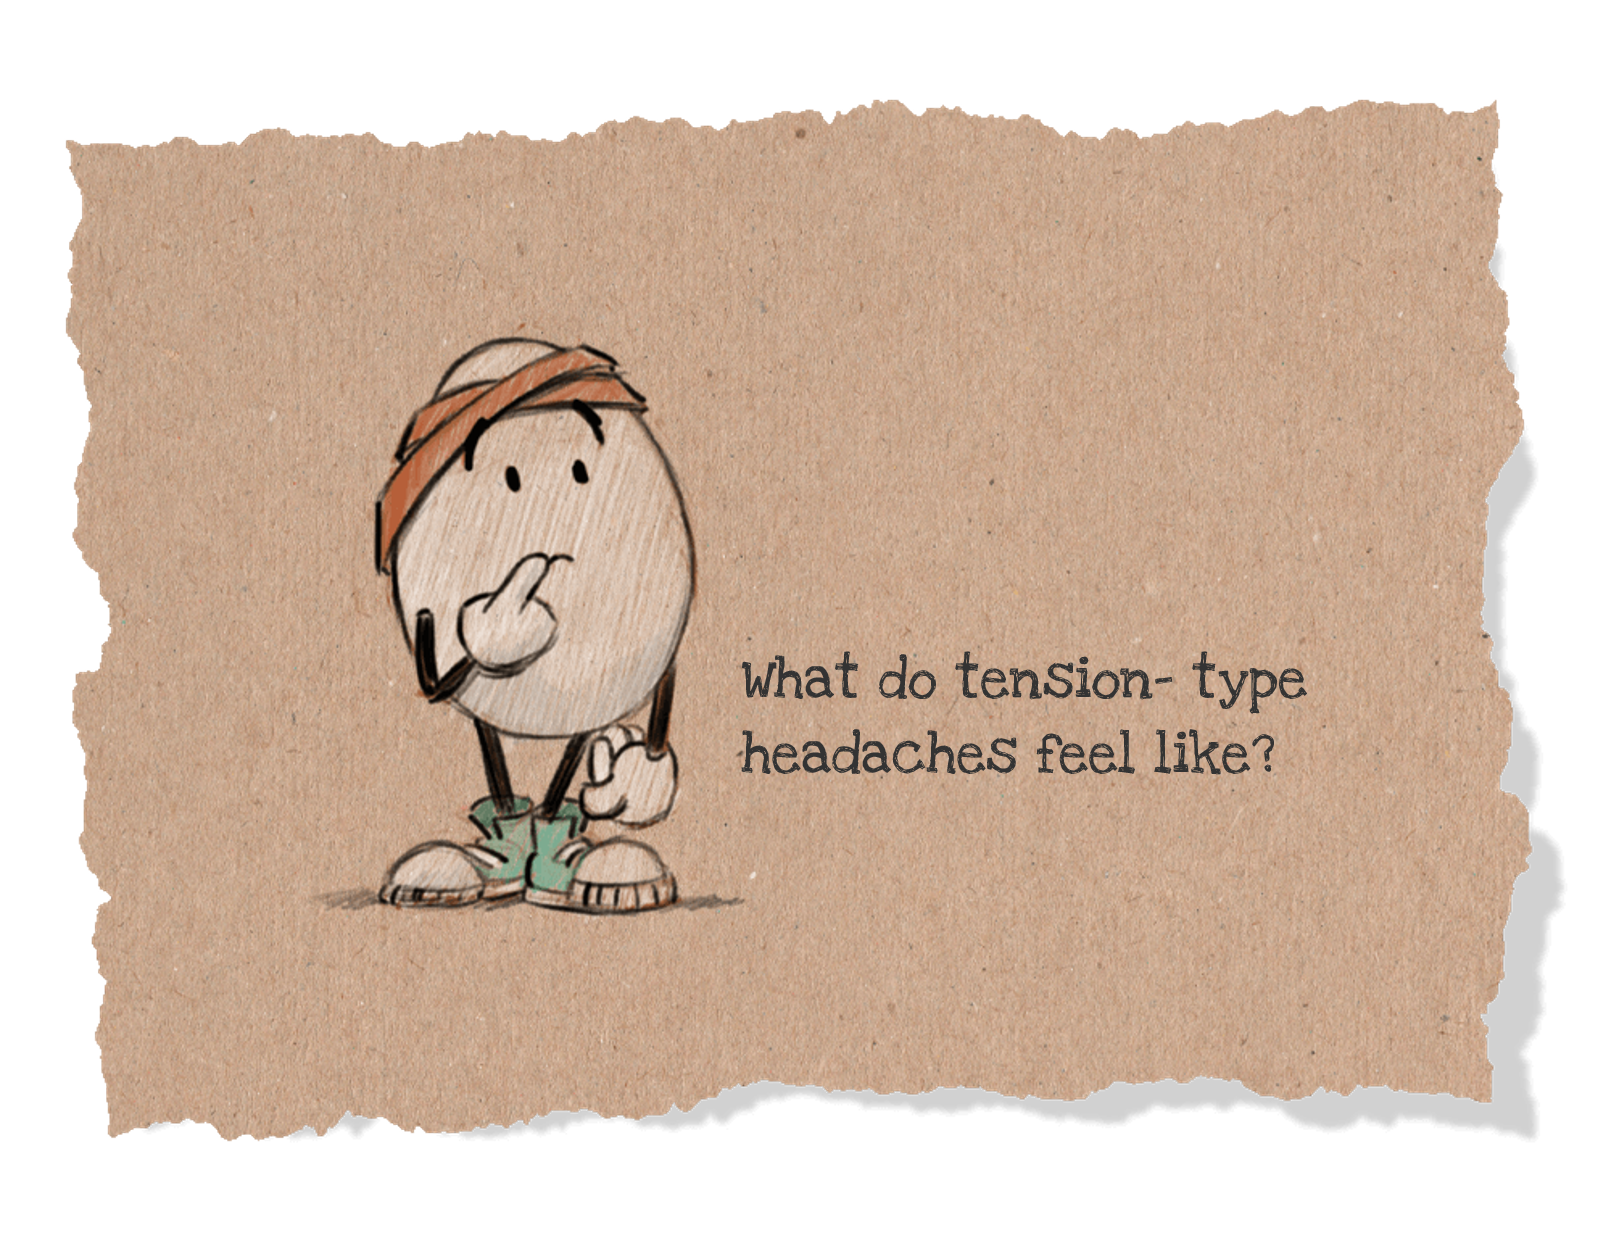 Tension-type headaches